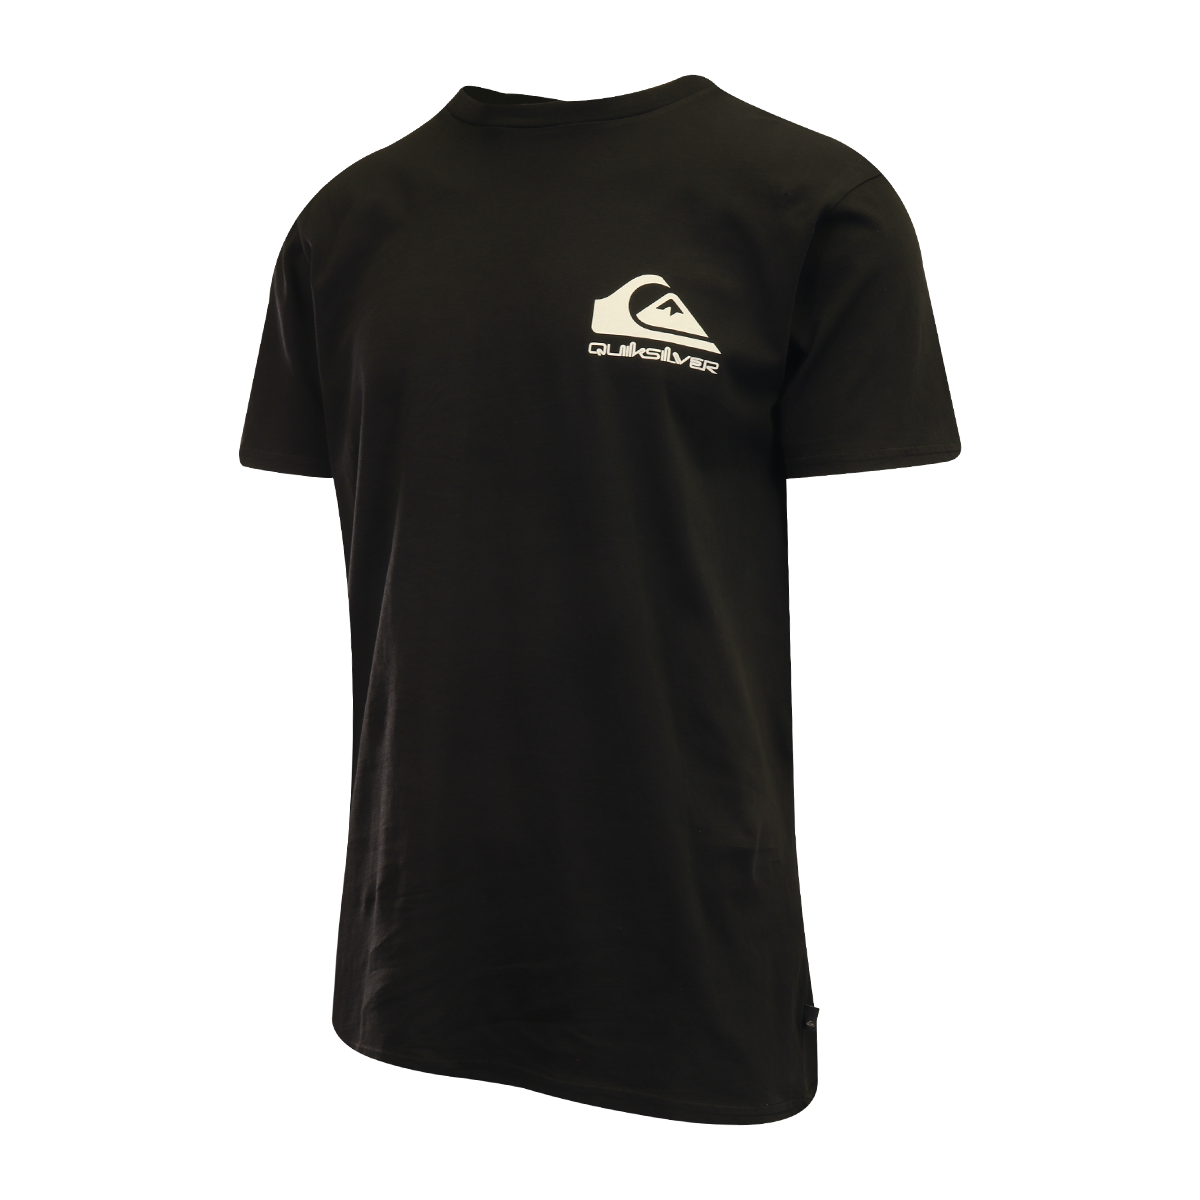 Quiksilver Men's T-Shirt Black Official Logo Graphic Print S/S (S08)